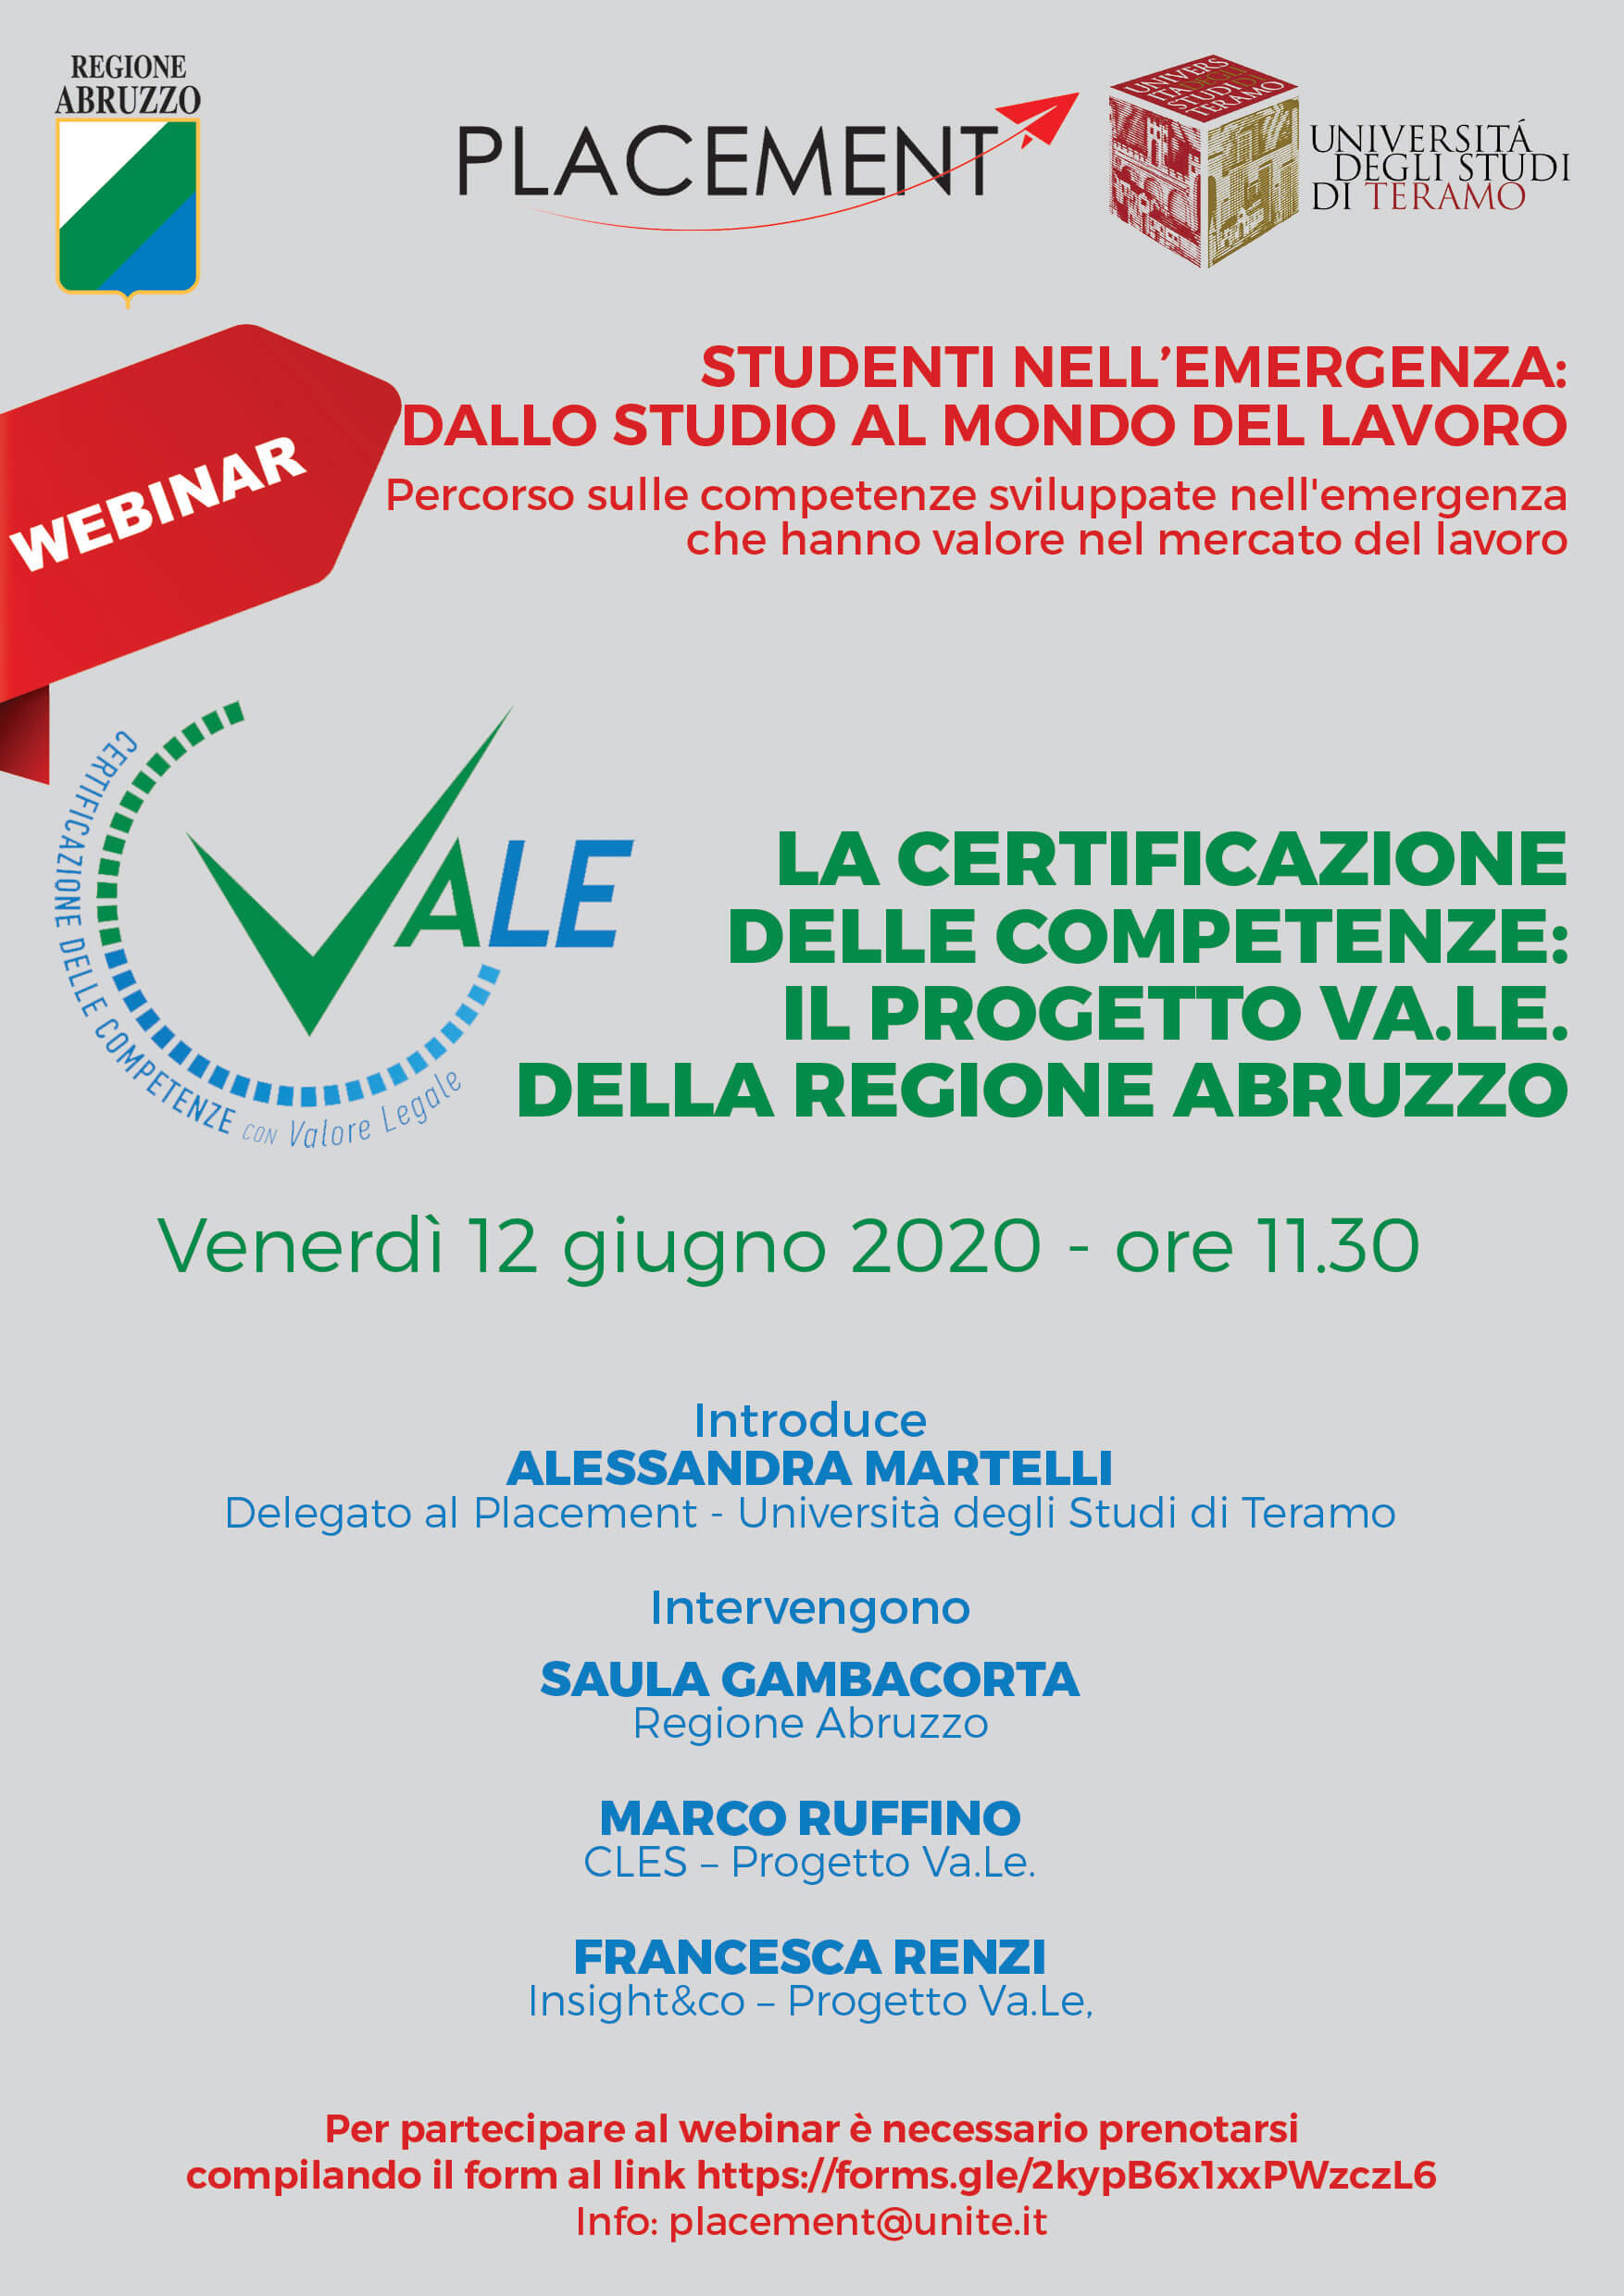 Webinar Placement: "La certificazione delle competenze: il progetto Va.le. della Regione Abruzzo"